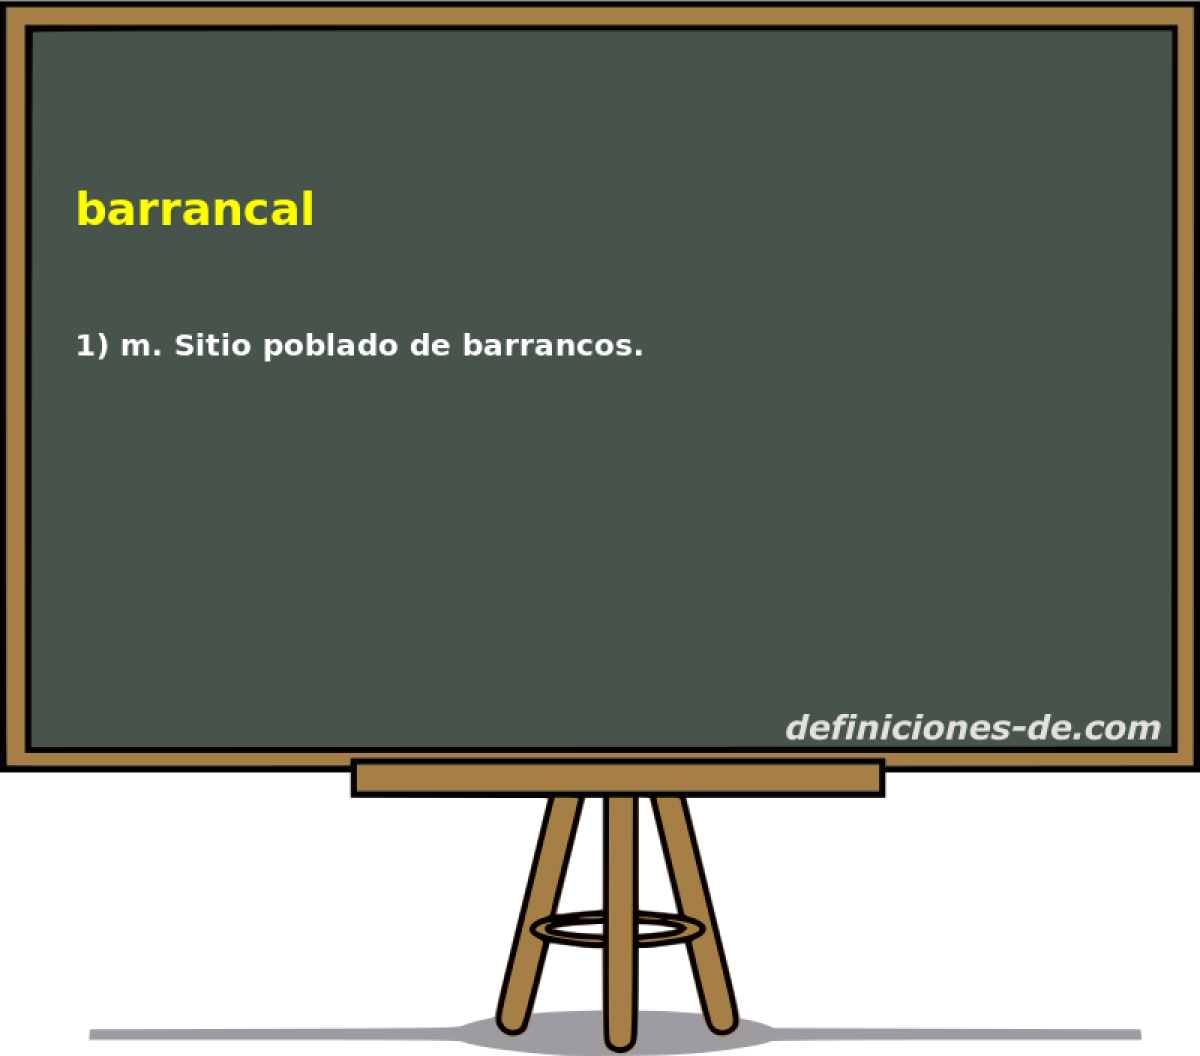 barrancal 